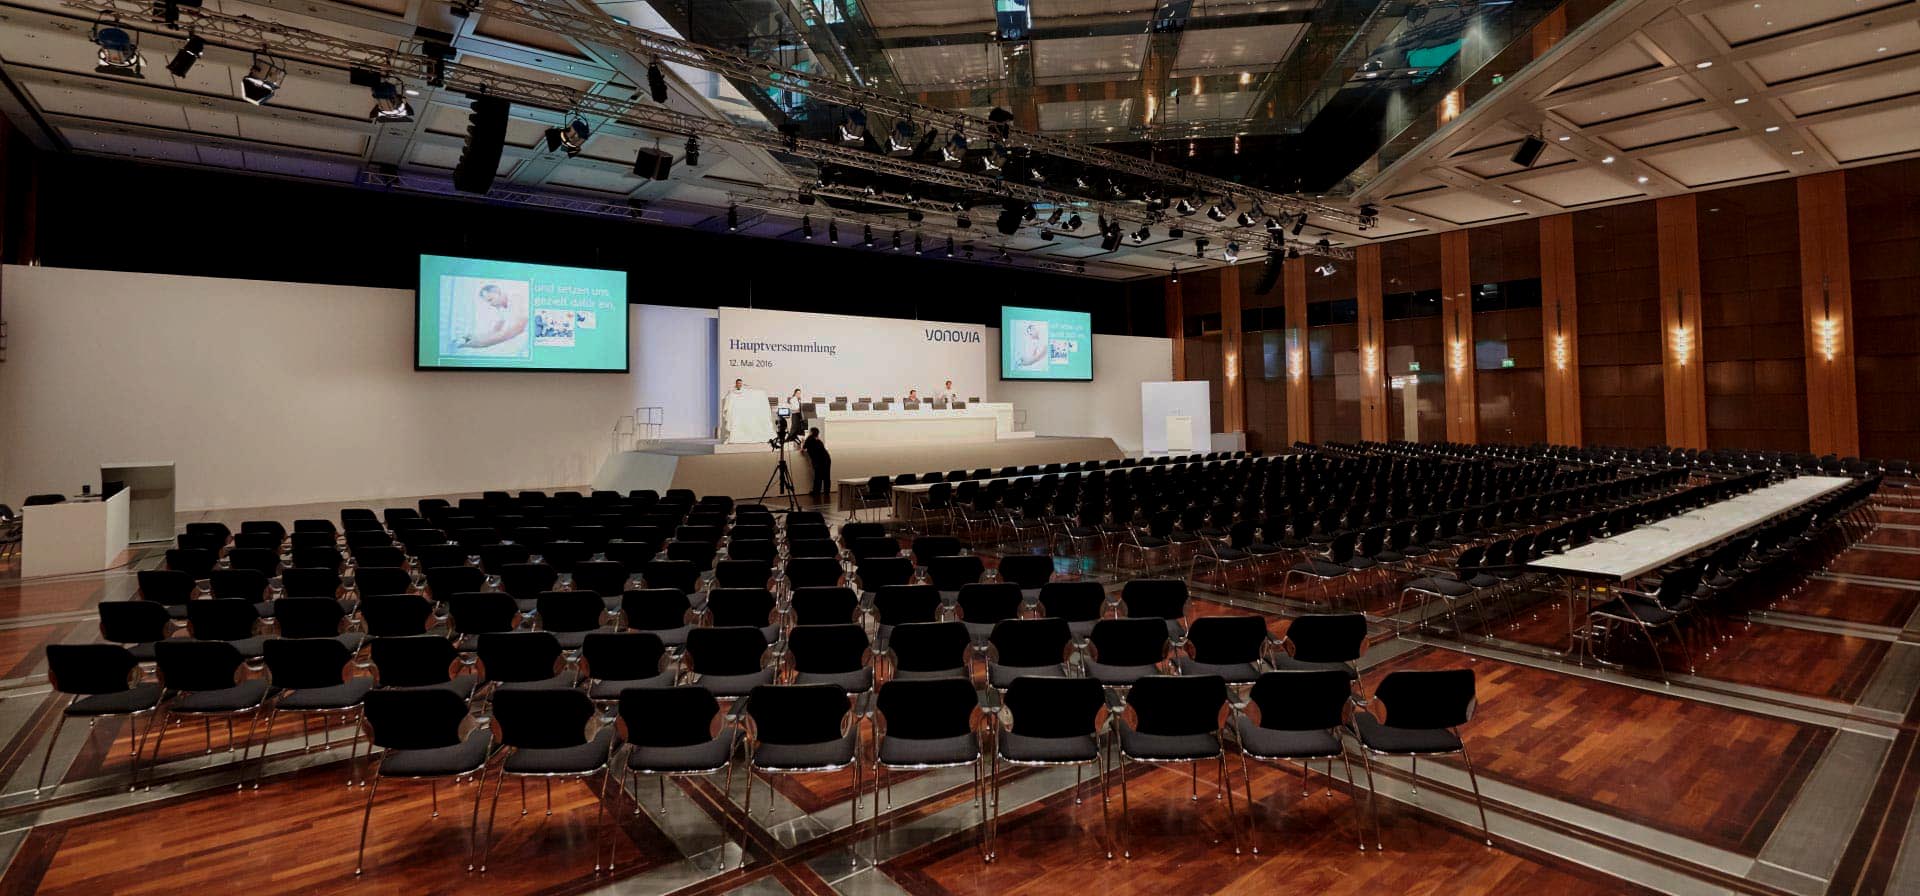 Großer Saal mit aufgebauter Bühne für die Vonovia Hauptversammlung